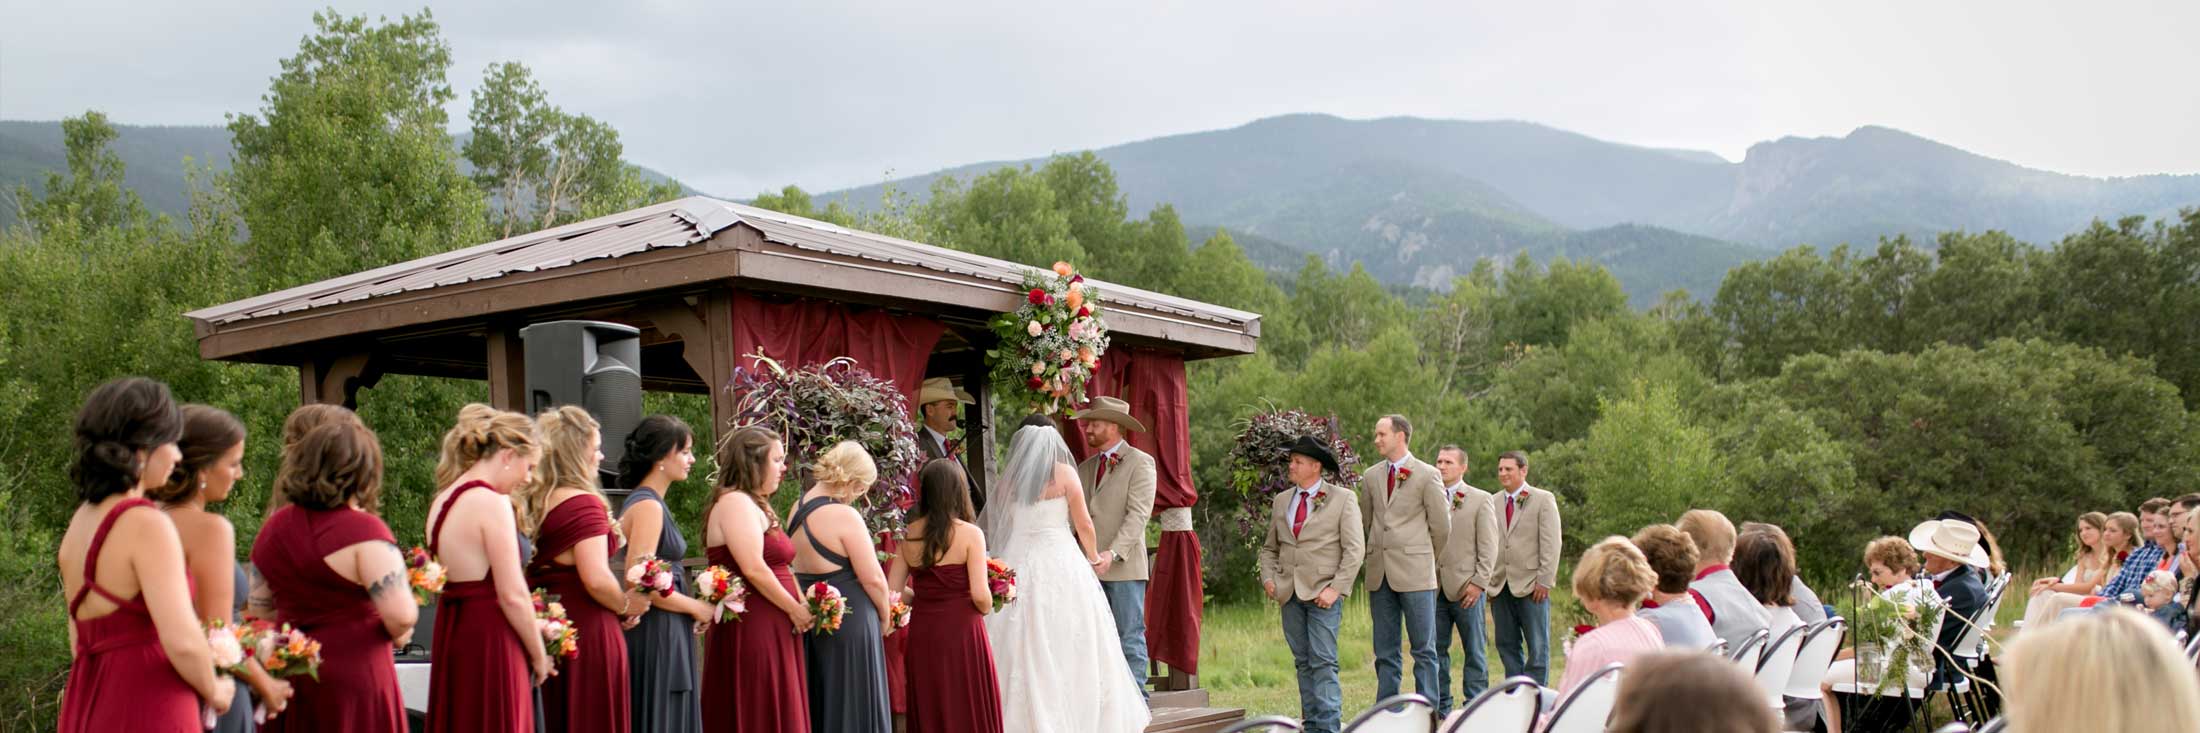 Brush Canyon Ranch » A private mountain wedding venue near